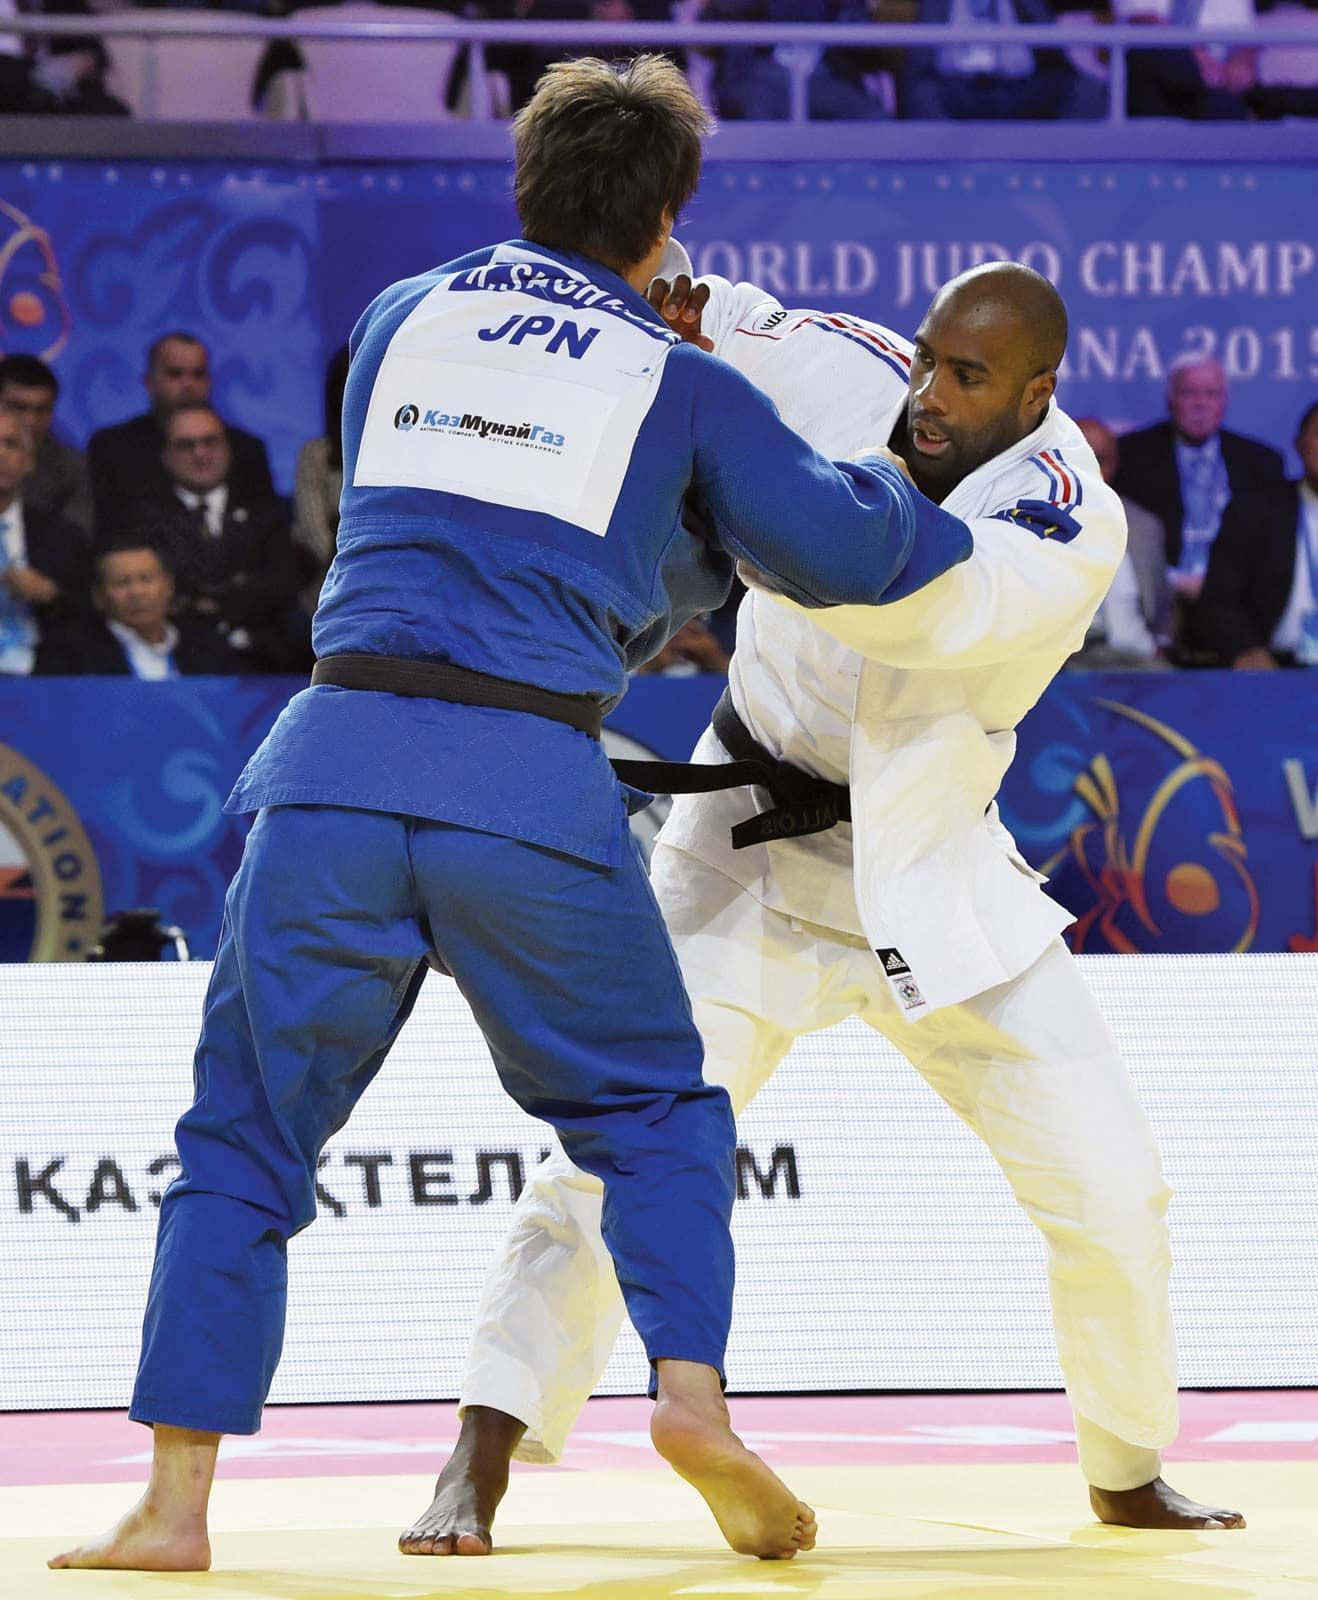 Zweimänner In Blauen Judoanzügen Kämpfen.